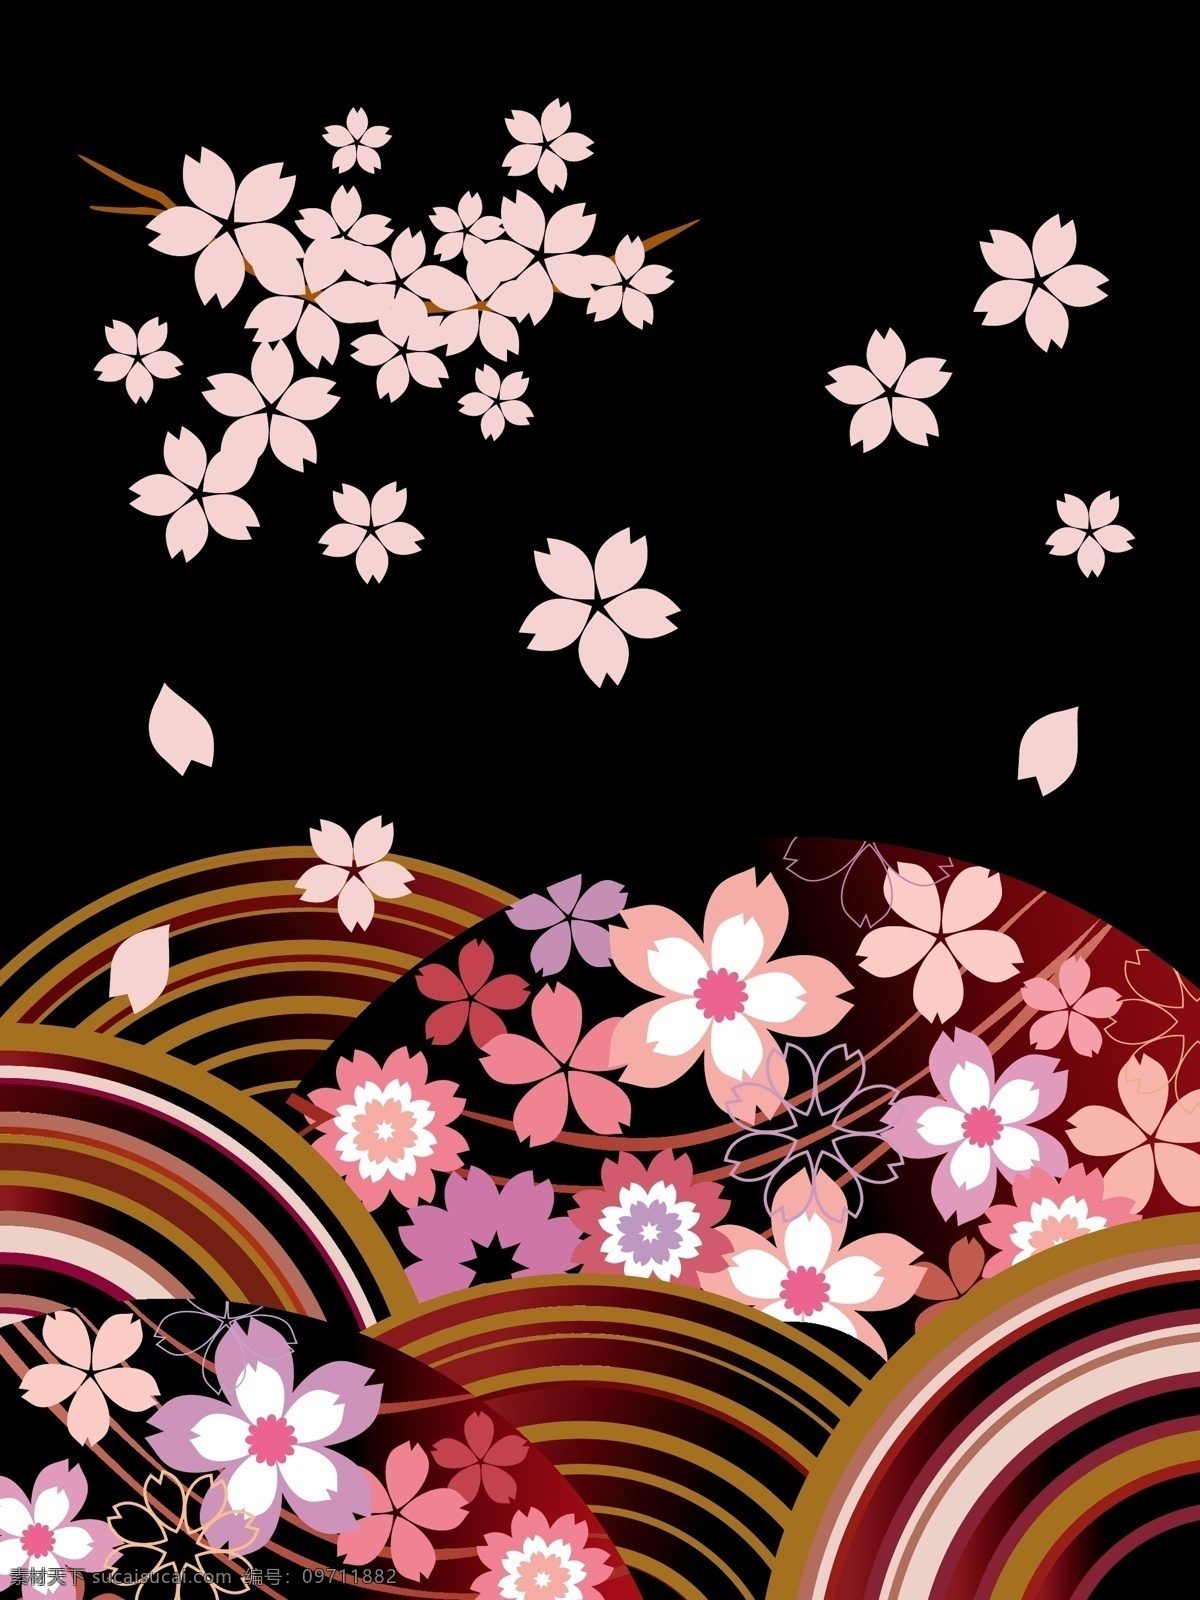 日式 花朵 背景 扇形背景素材 花纹花朵素材 黑色